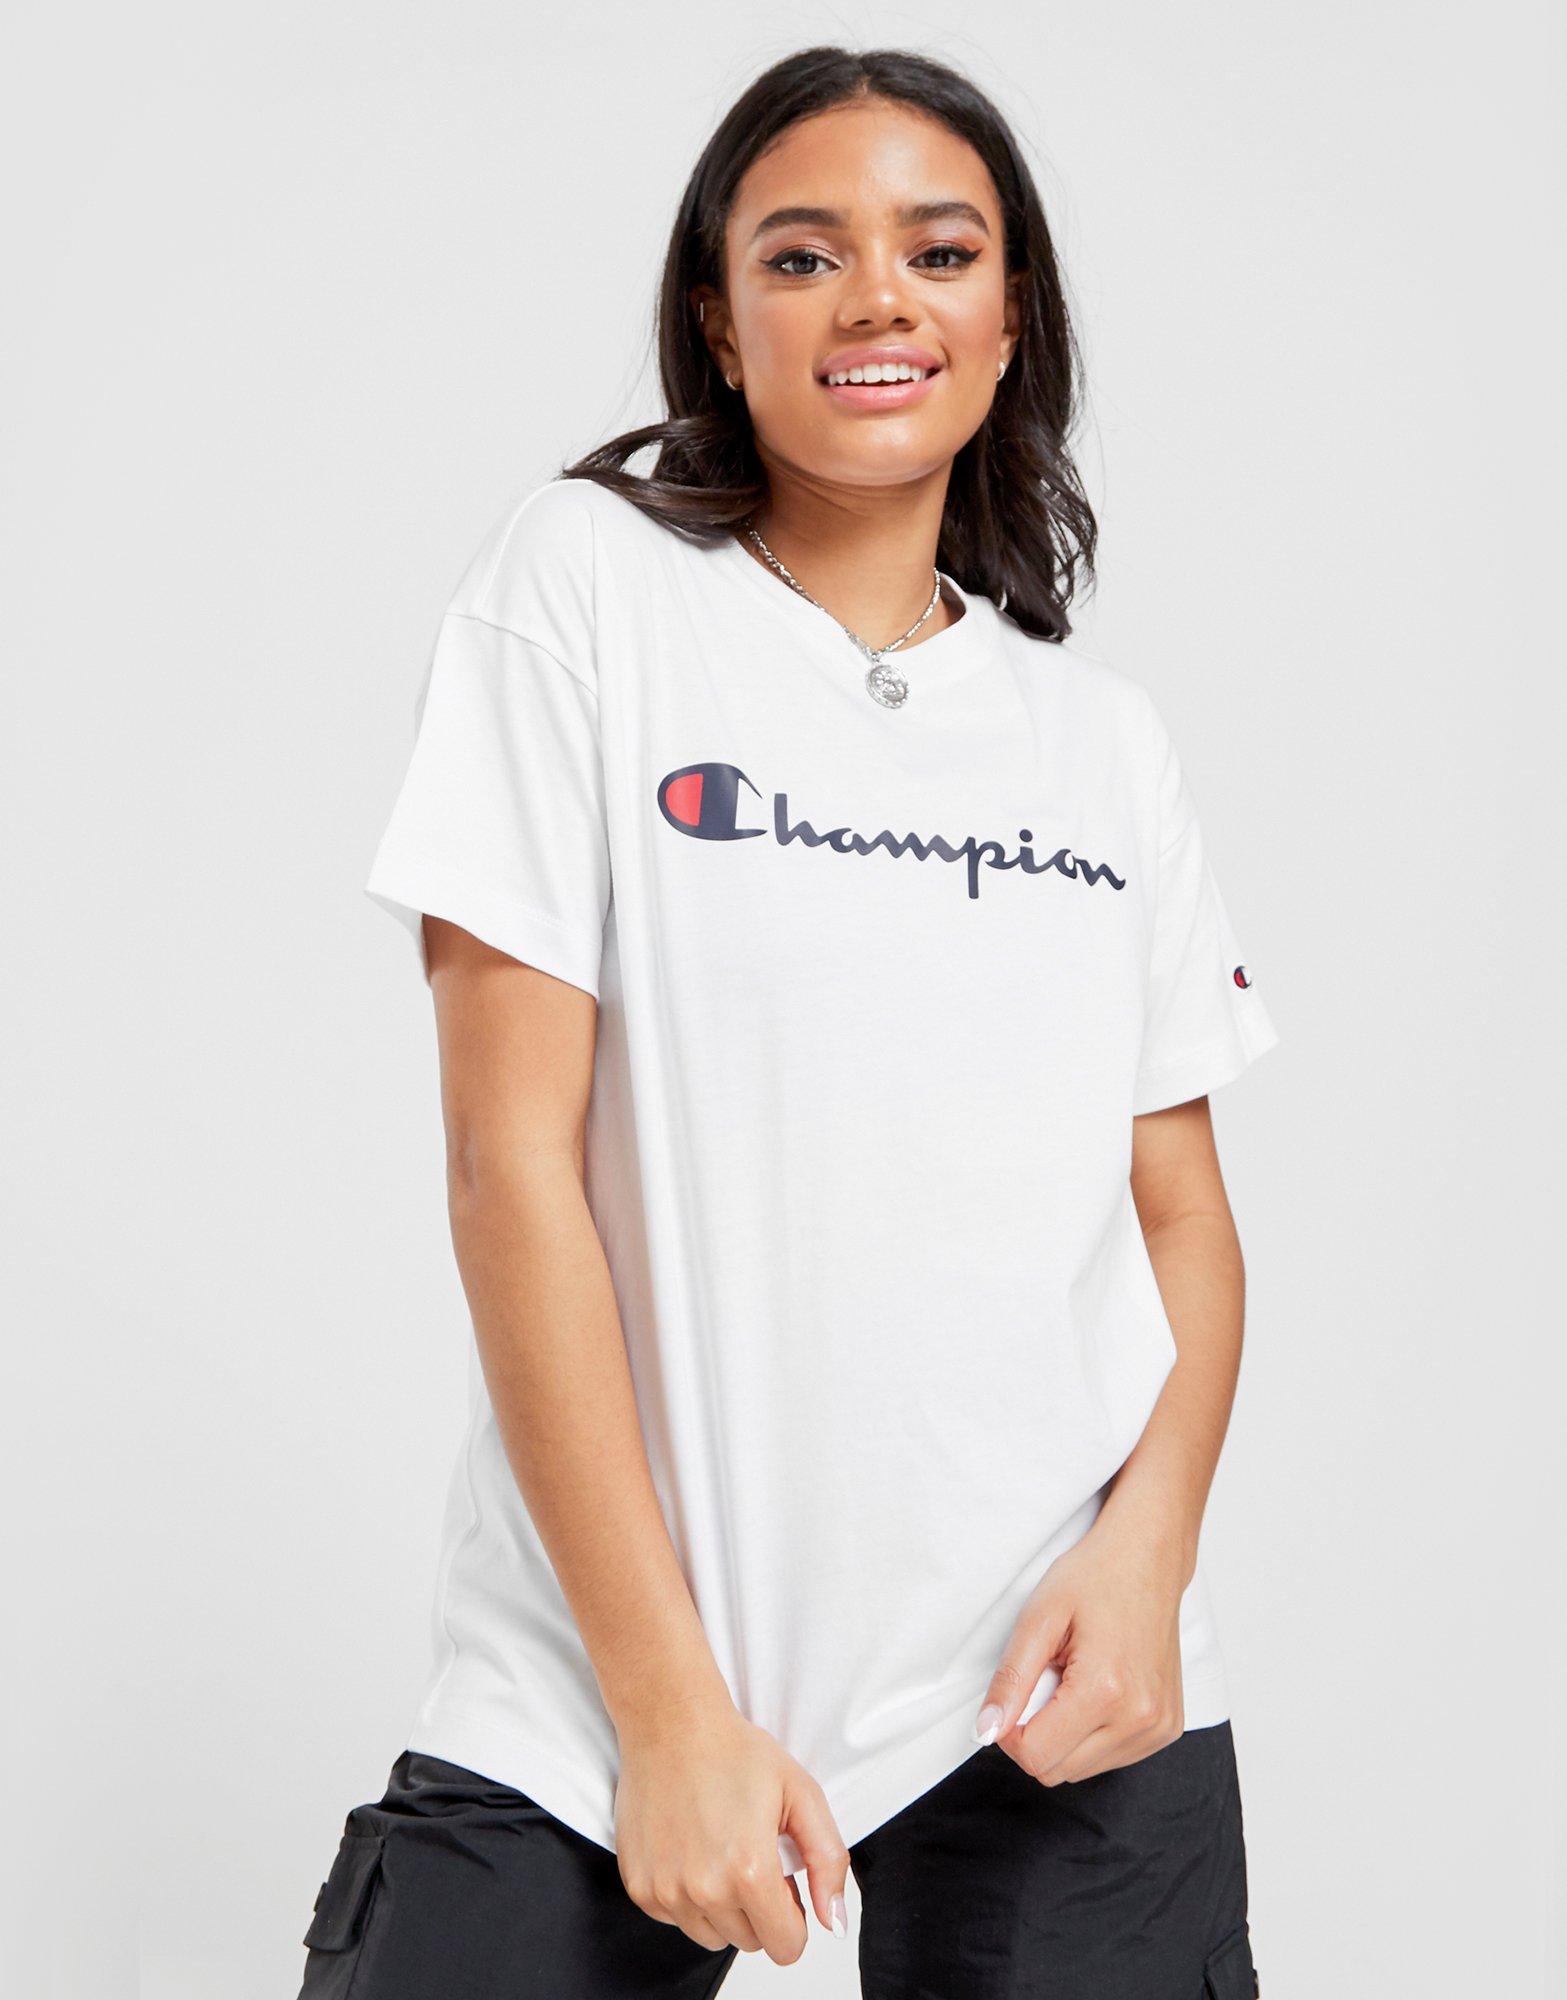 champion tshirt for women